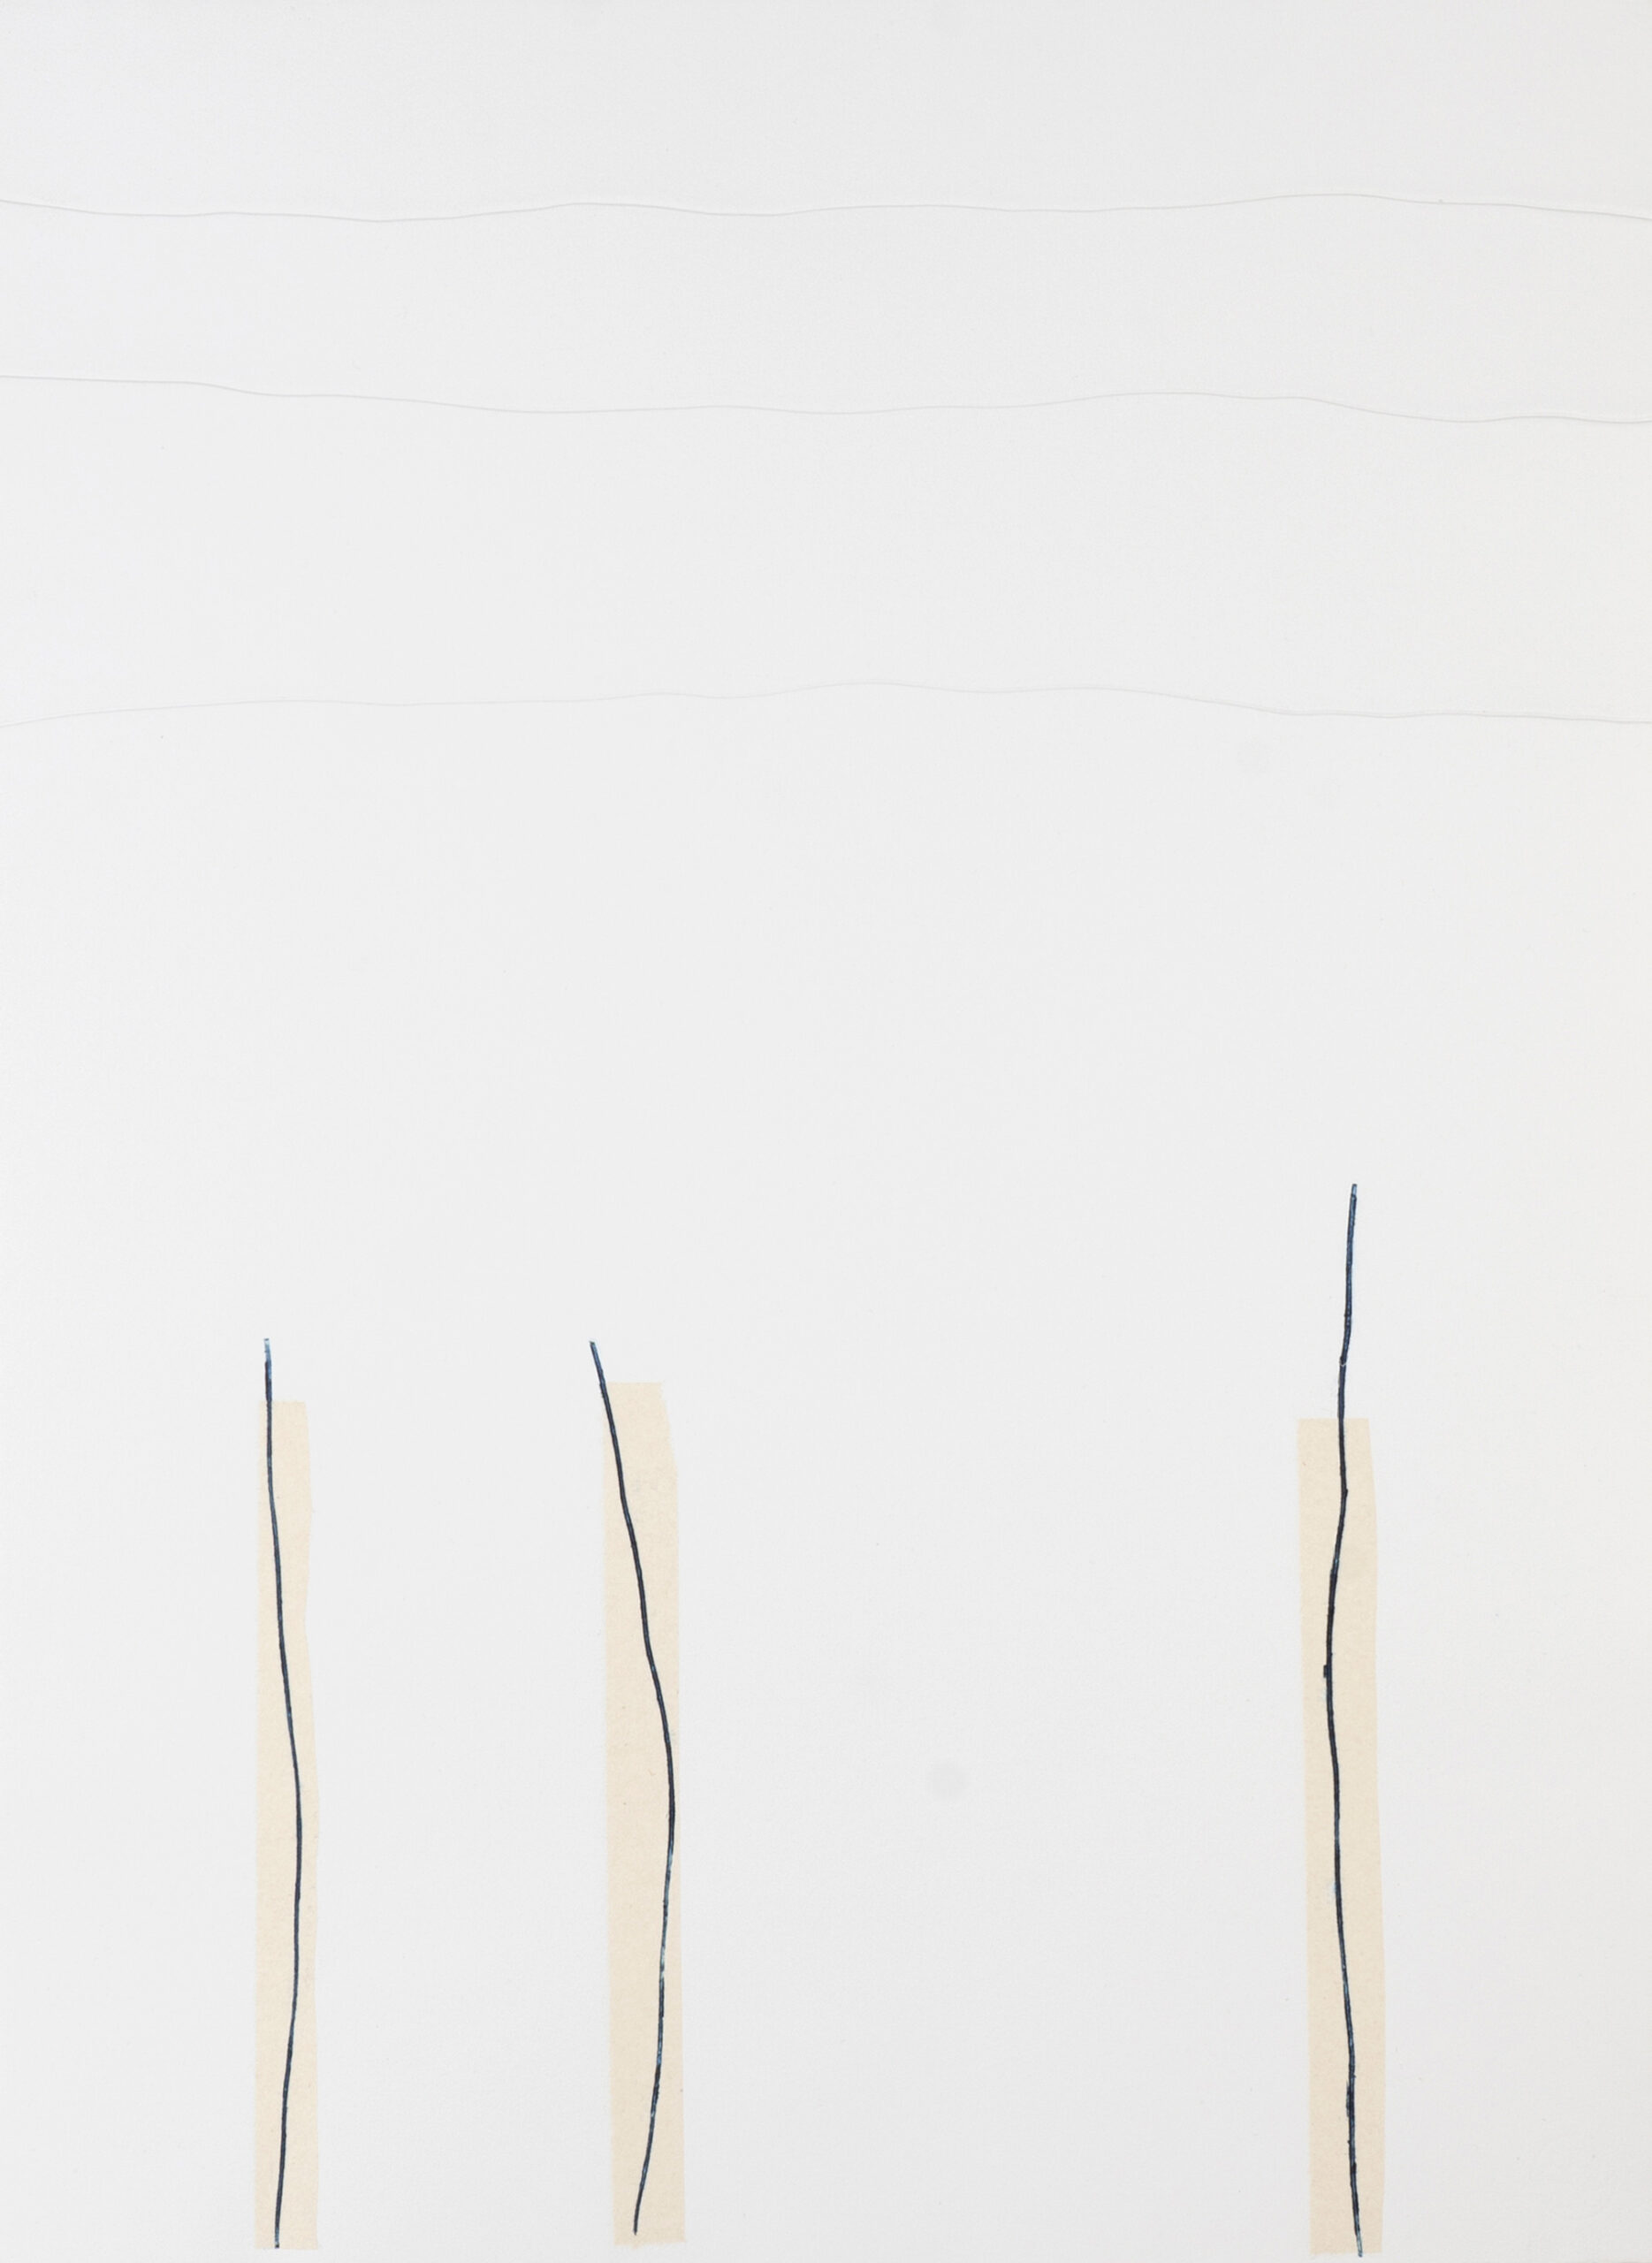 Miriam Salamander blaue Linien auf weißen Papier, Praegedruck